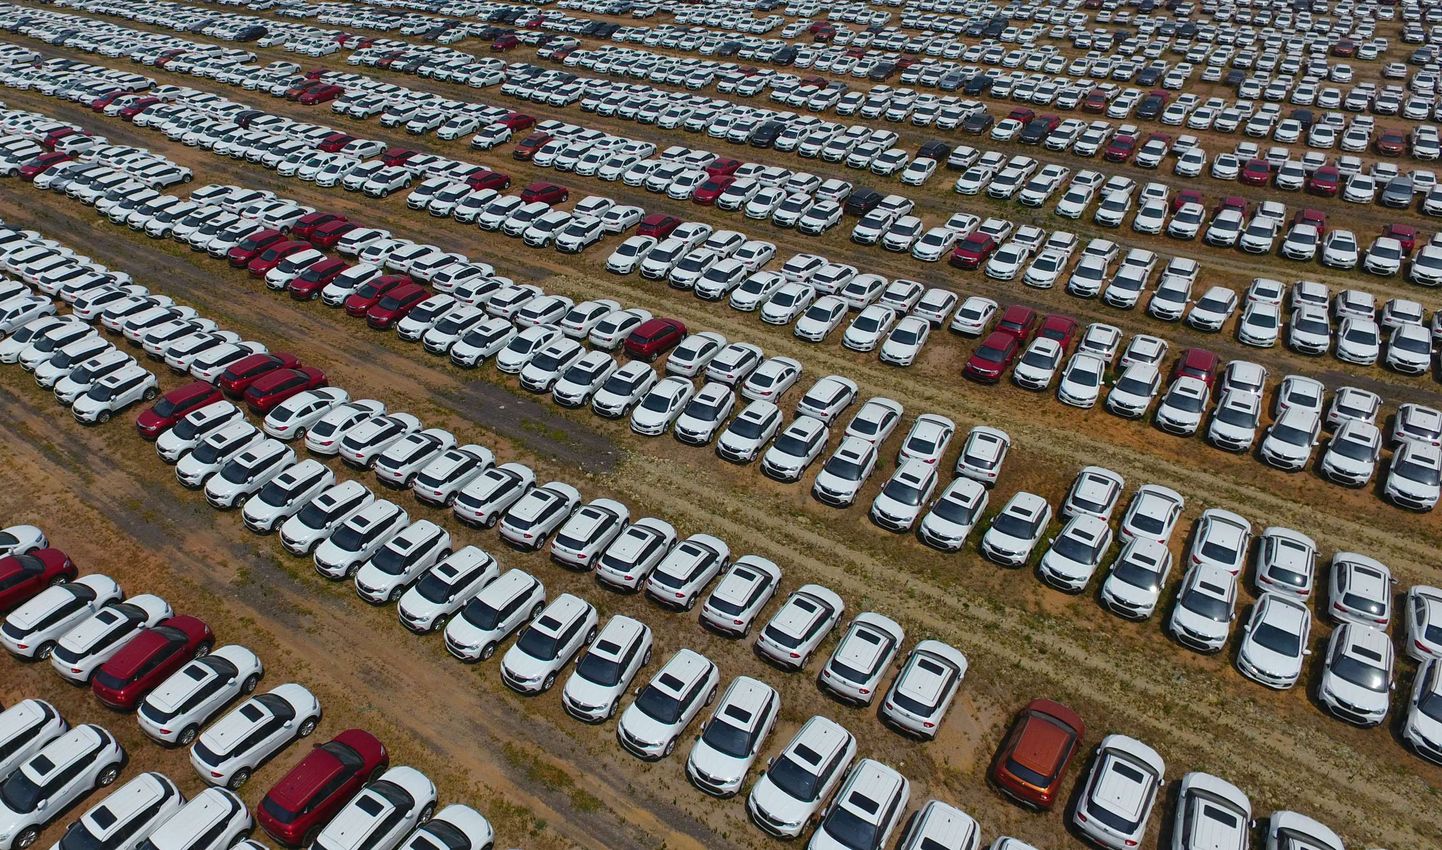 Тысячи новых автомобилей в Шэньяне, провинция Ляонин. Иллюстративное фото.